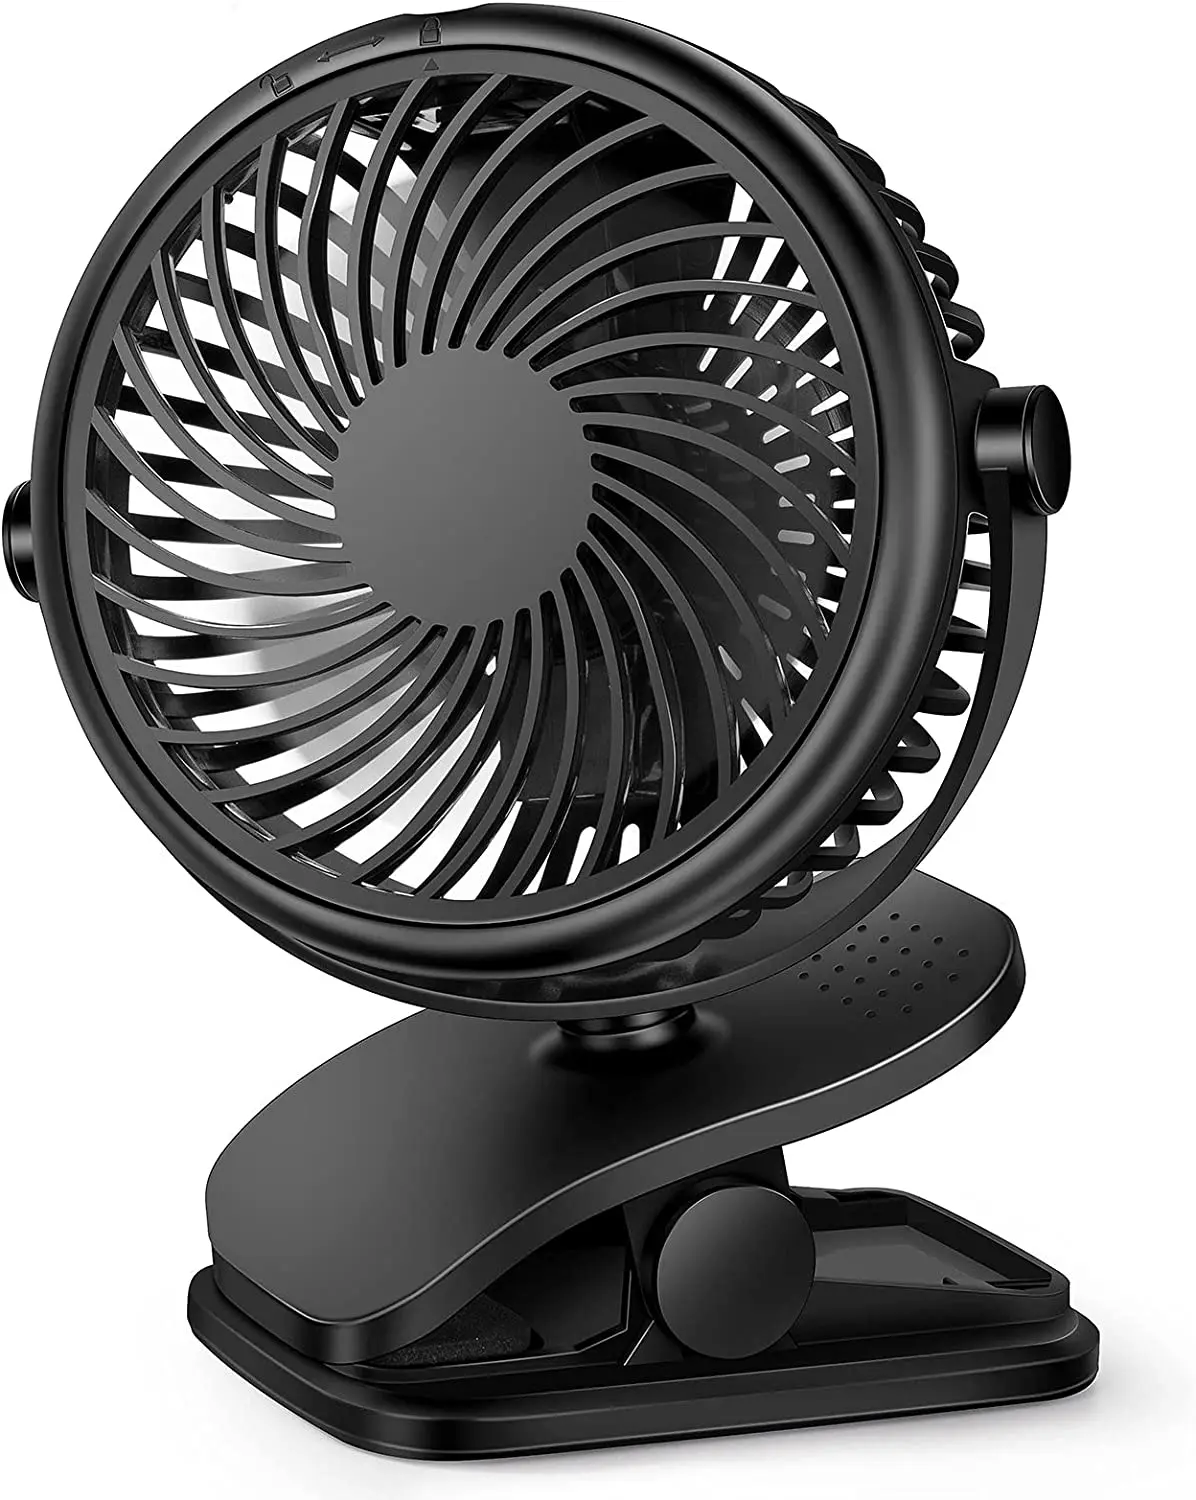 

4 Inch Stroller Fan Clip On Fan Portable Desk Fan with 3 Speed 360° Rotate Desktop Fan Home Office Baby Stroller Fan